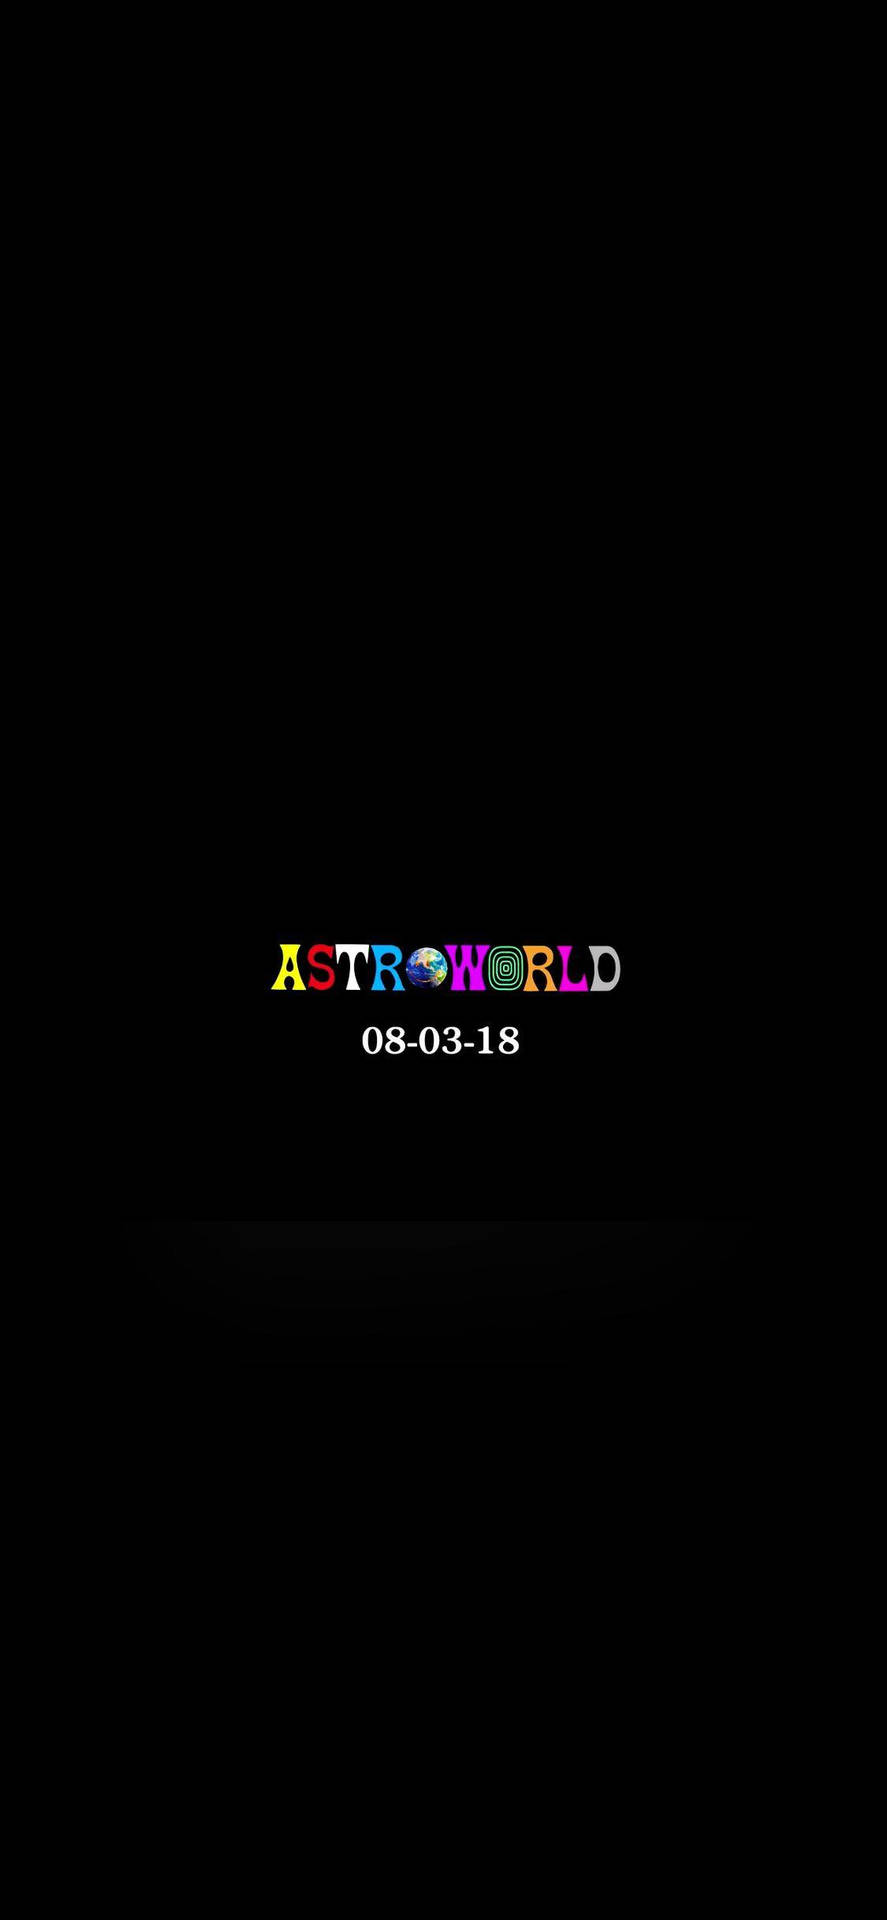 Travis Scott Astroworld Concert Date Background Background